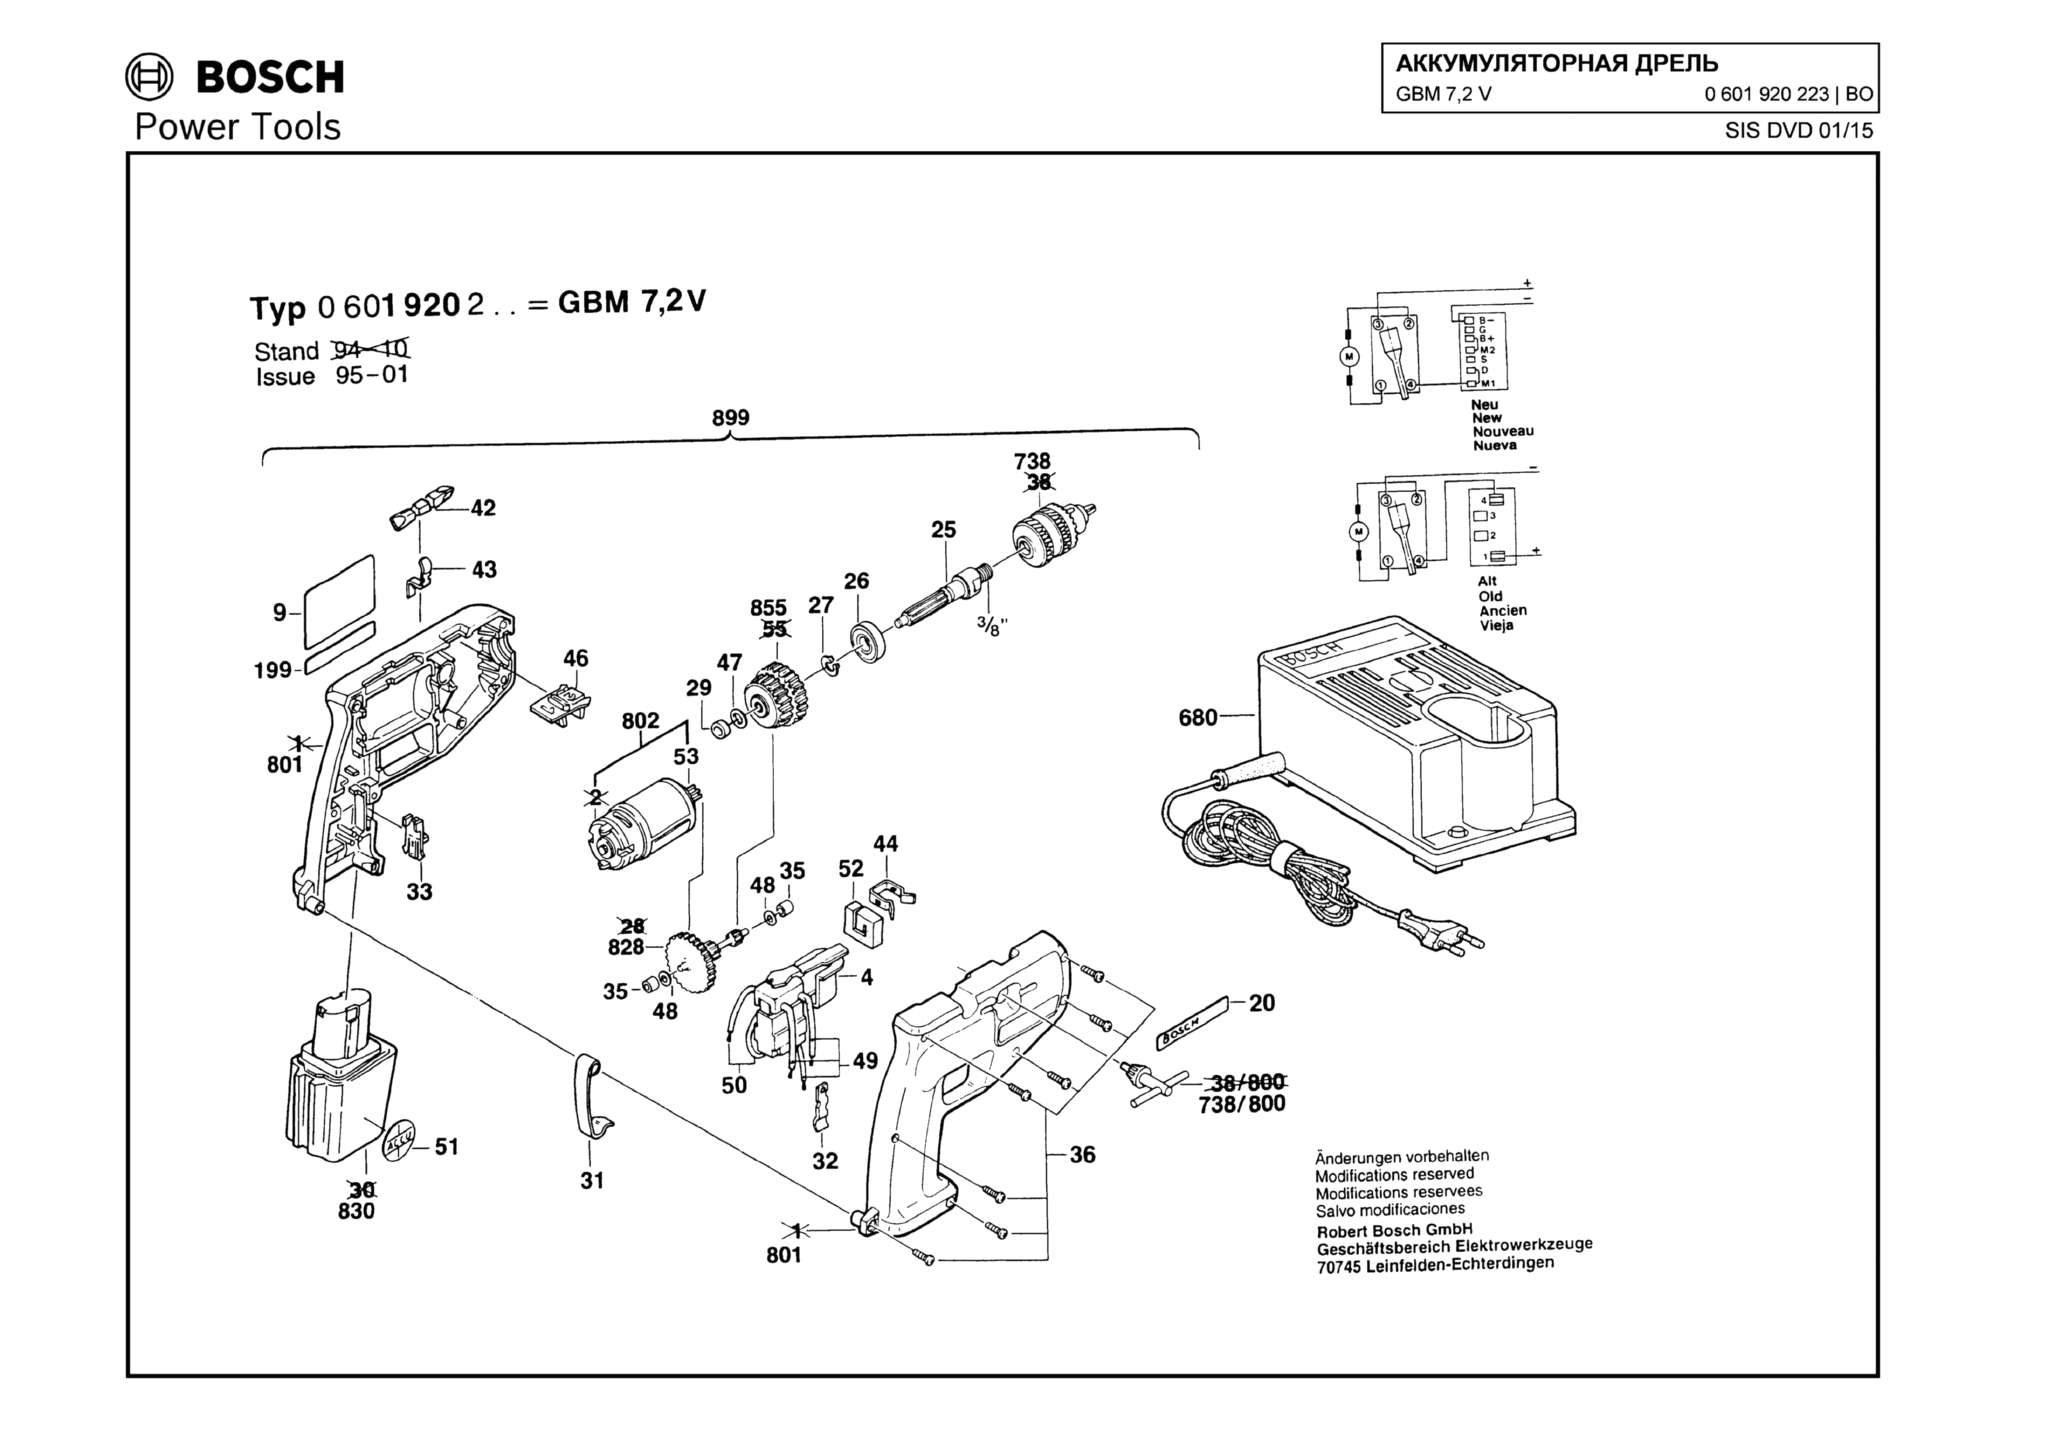 Запчасти, схема и деталировка Bosch GBM 7,2 V (ТИП 0601920223)